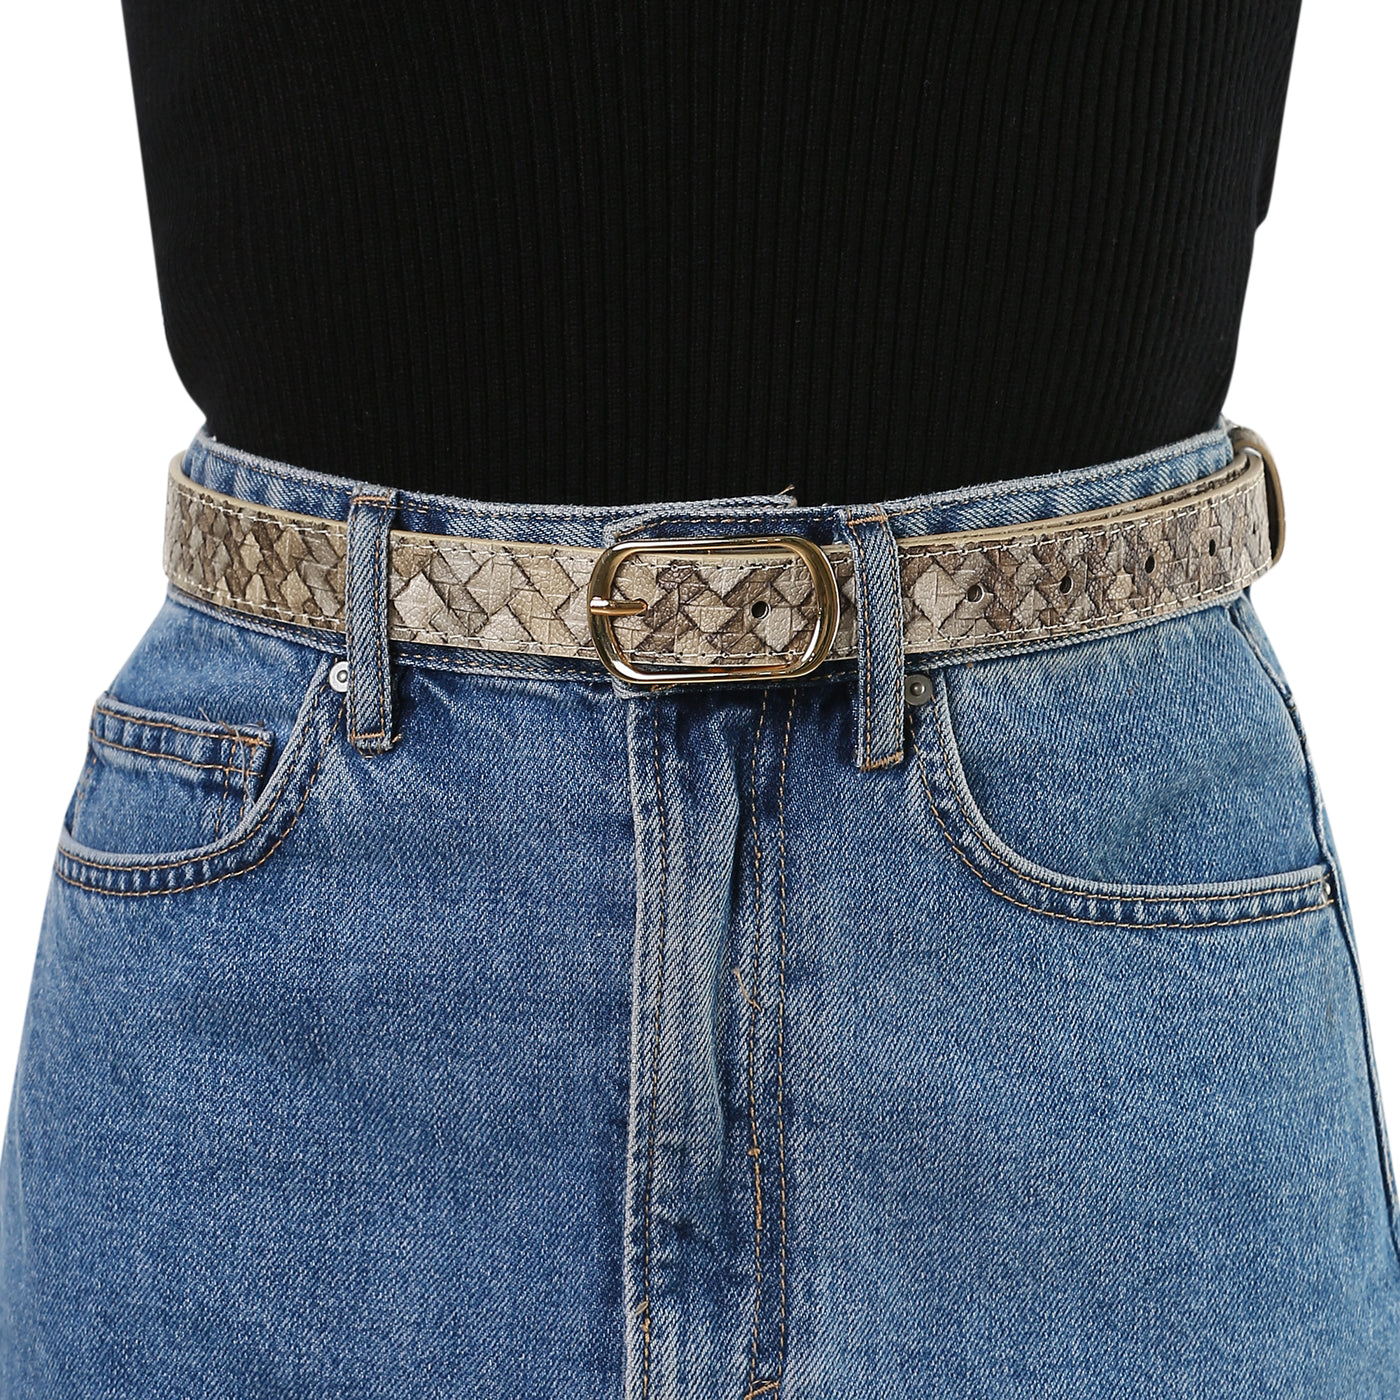 Allegra K Faux Leather Metal Pin Buckle Woven Waist Jeans Dress Belt